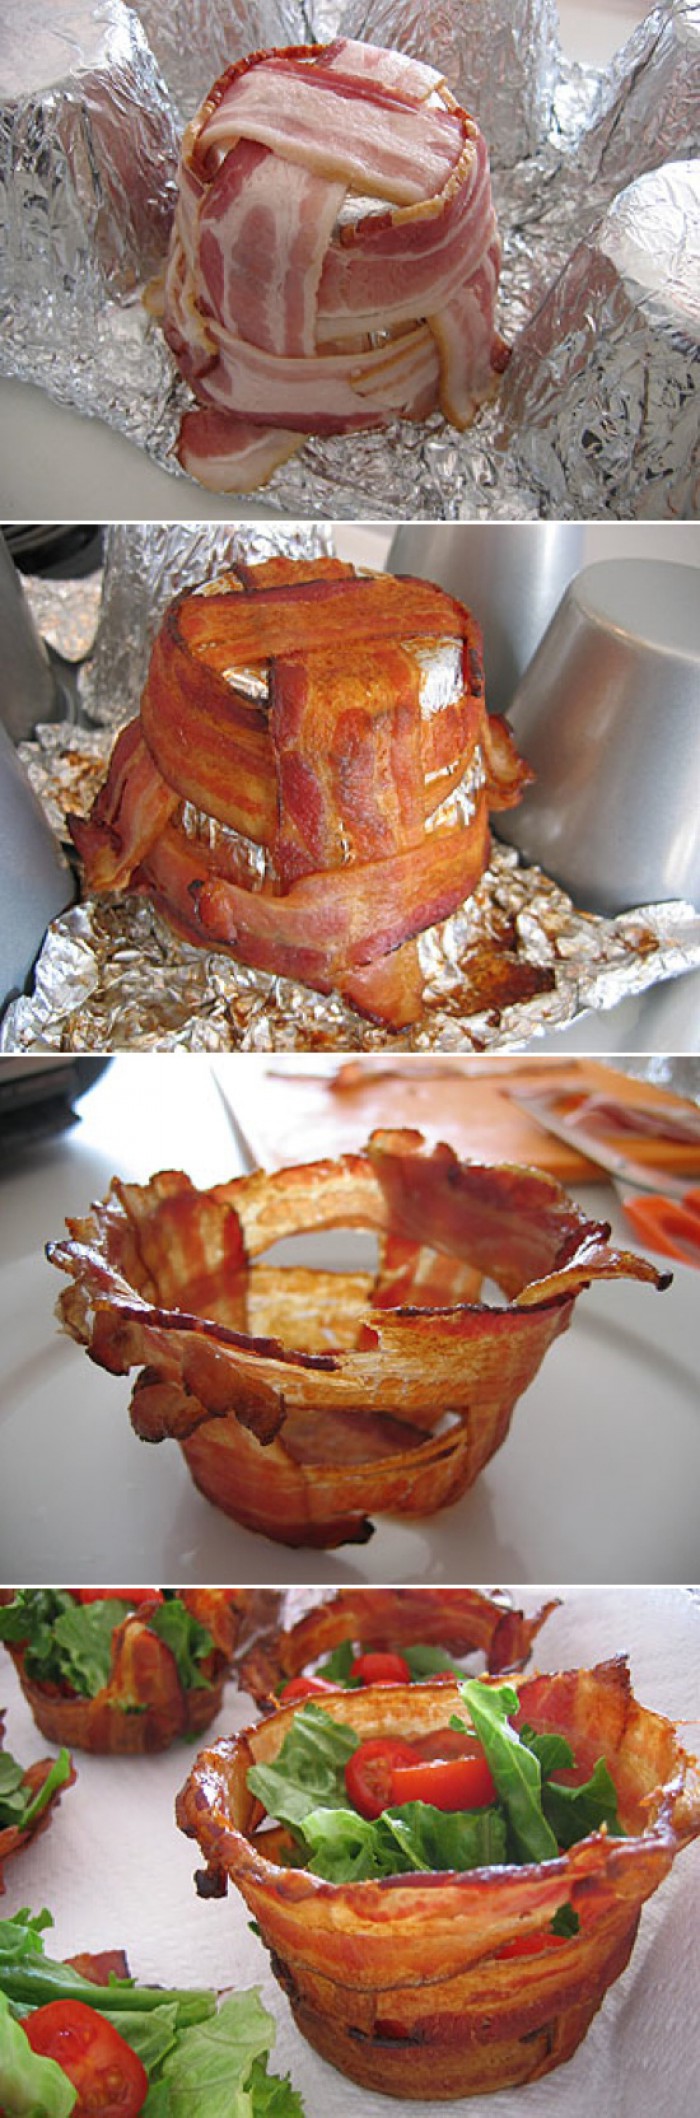 12. A bacon bowl